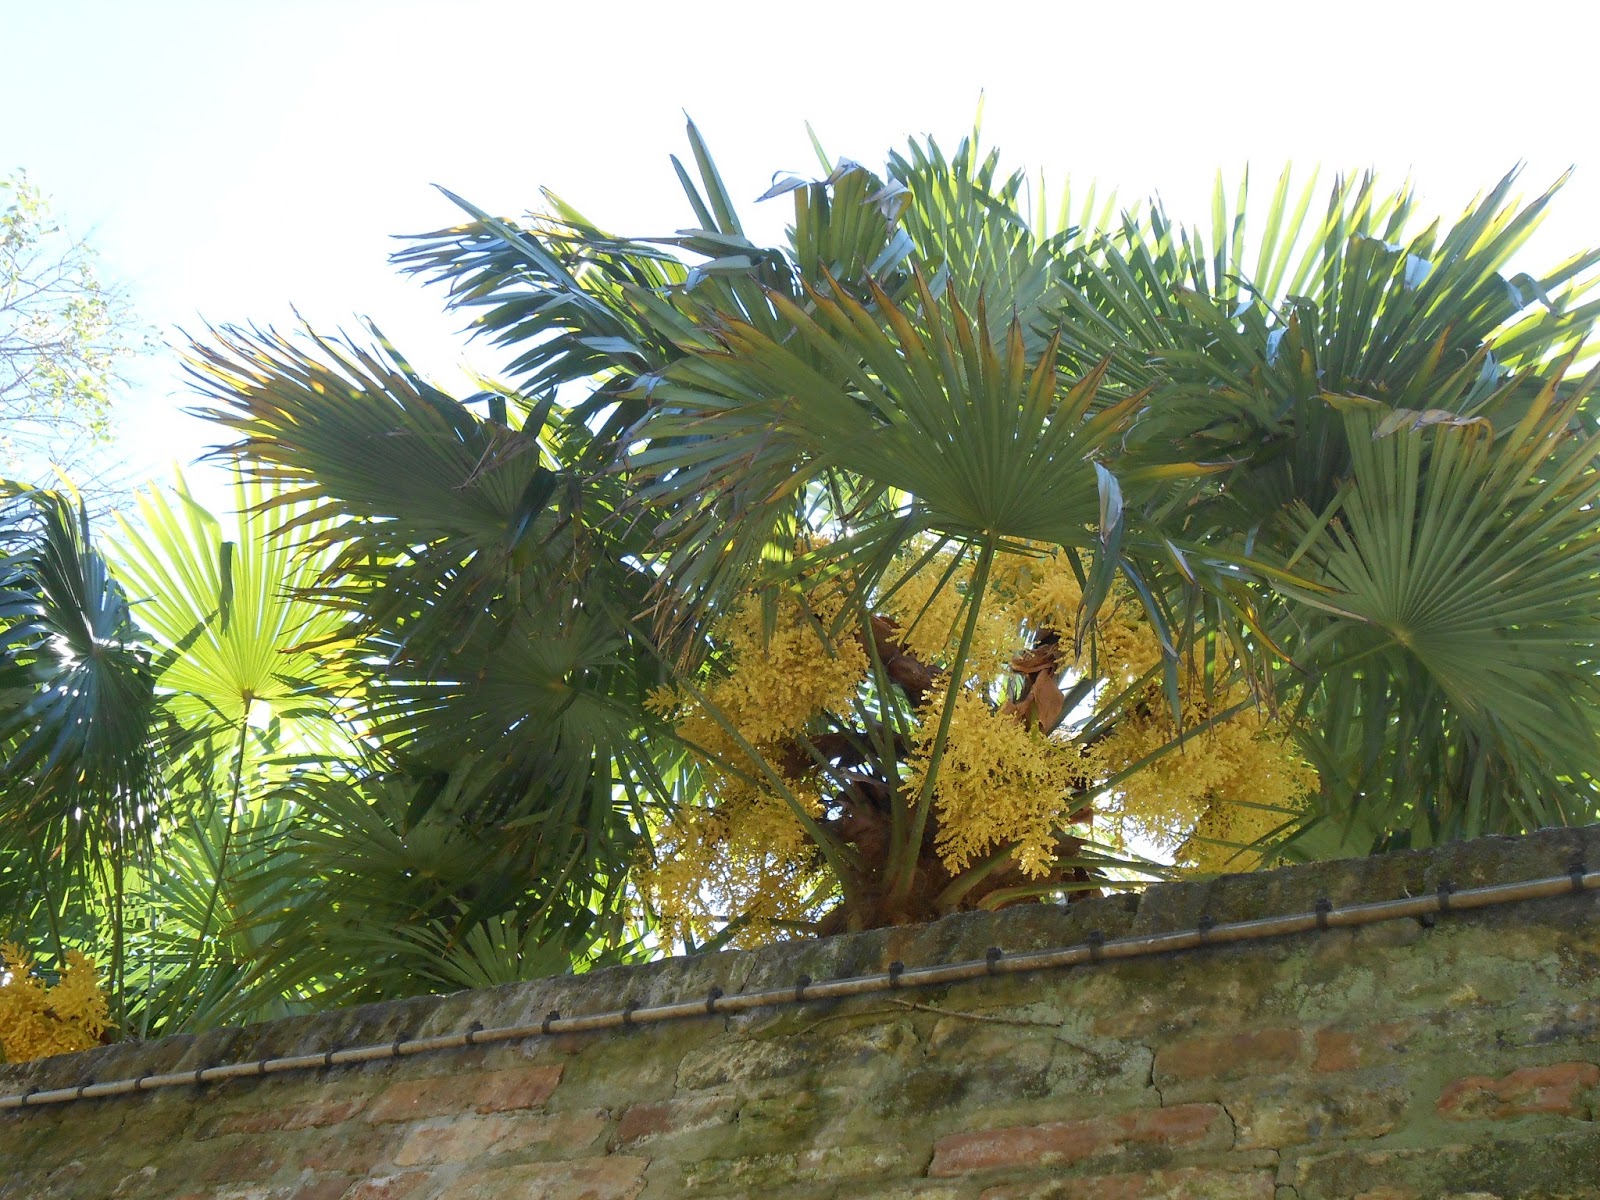 Le palme fioriscono a Venezia - Flowering palm trees in Venice